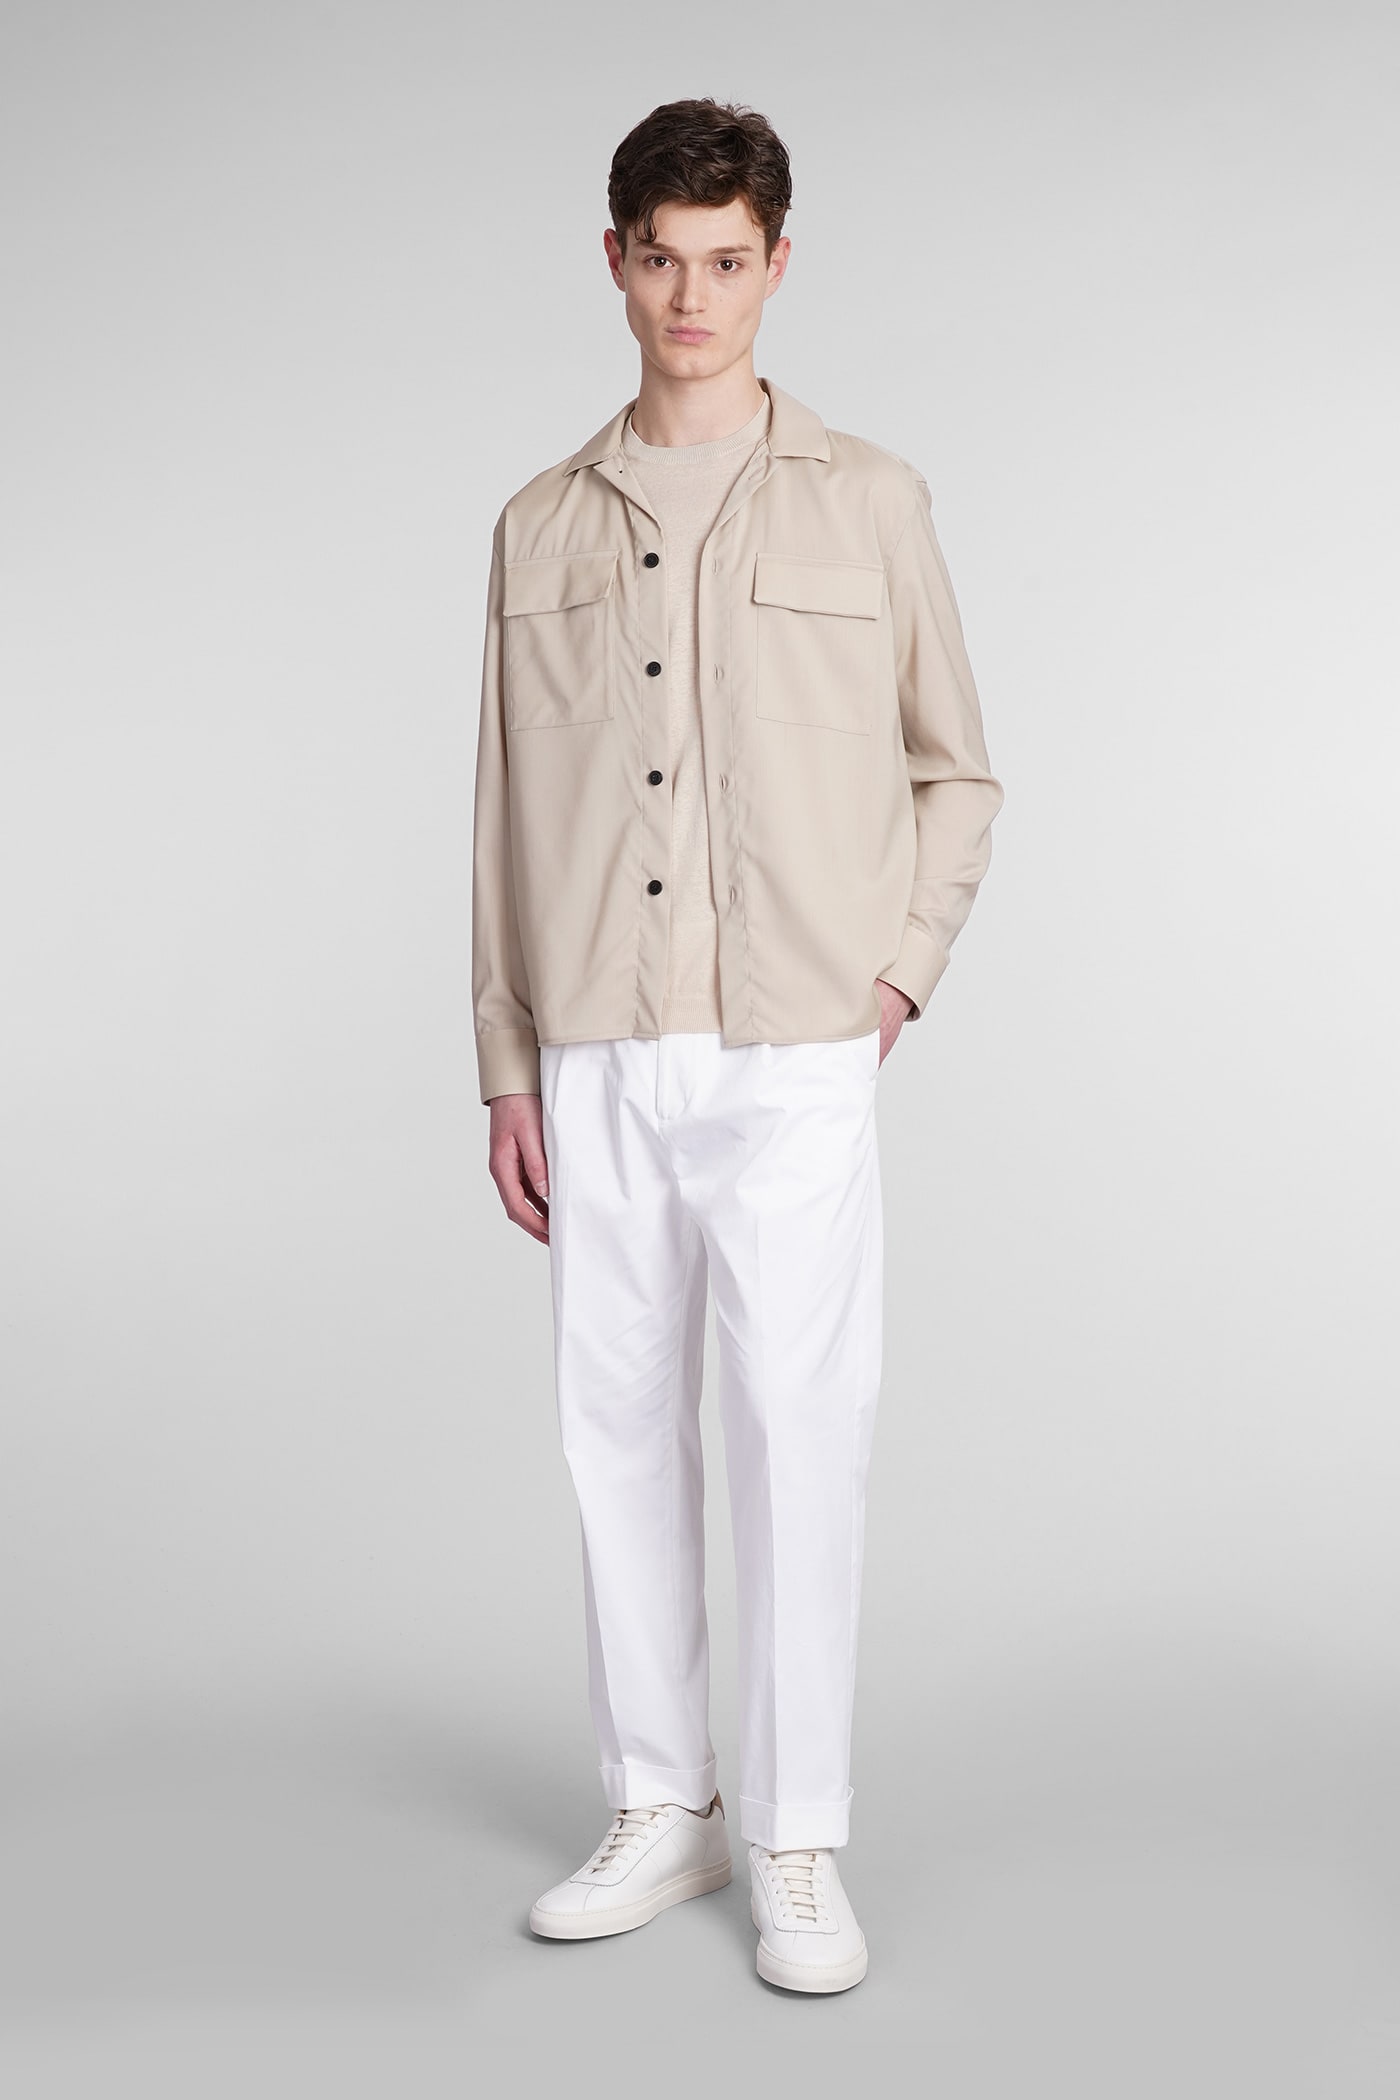 Shop Low Brand Kim Pants In White Cotton